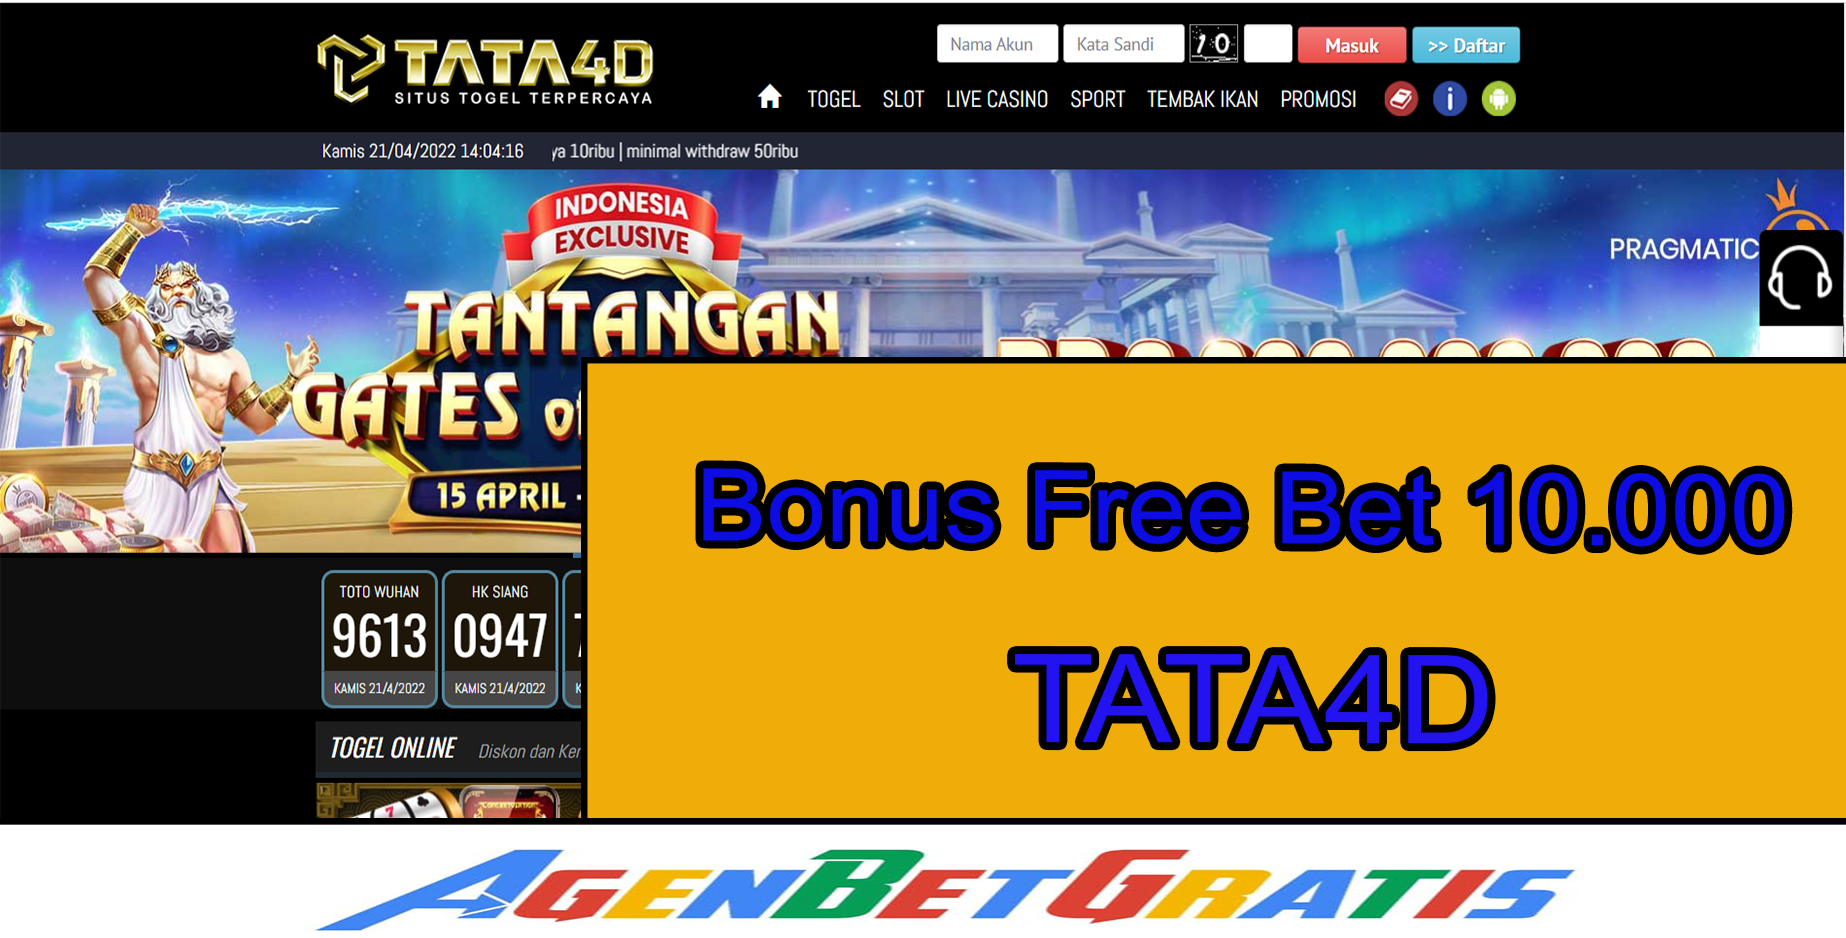 TATA4D - Bonus FreeBet 10.000